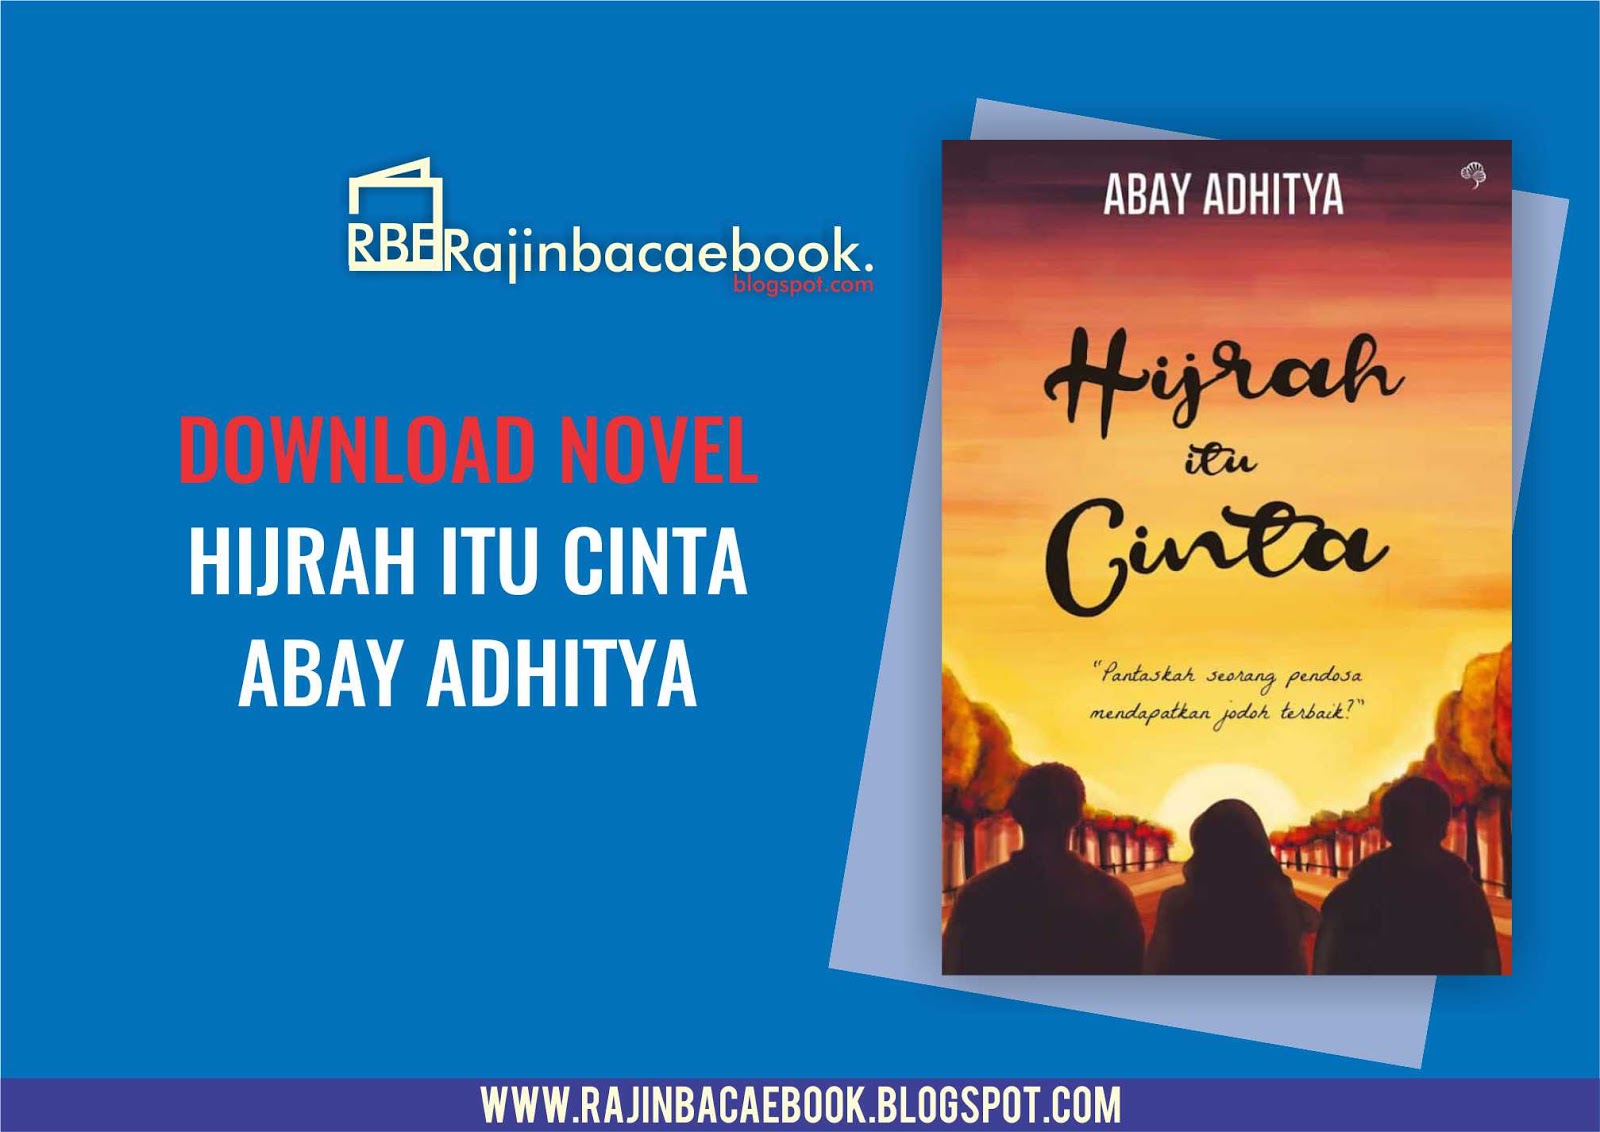 Hijrah Itu Cinta by Kang Abay Pdf - Download Ebook PDF